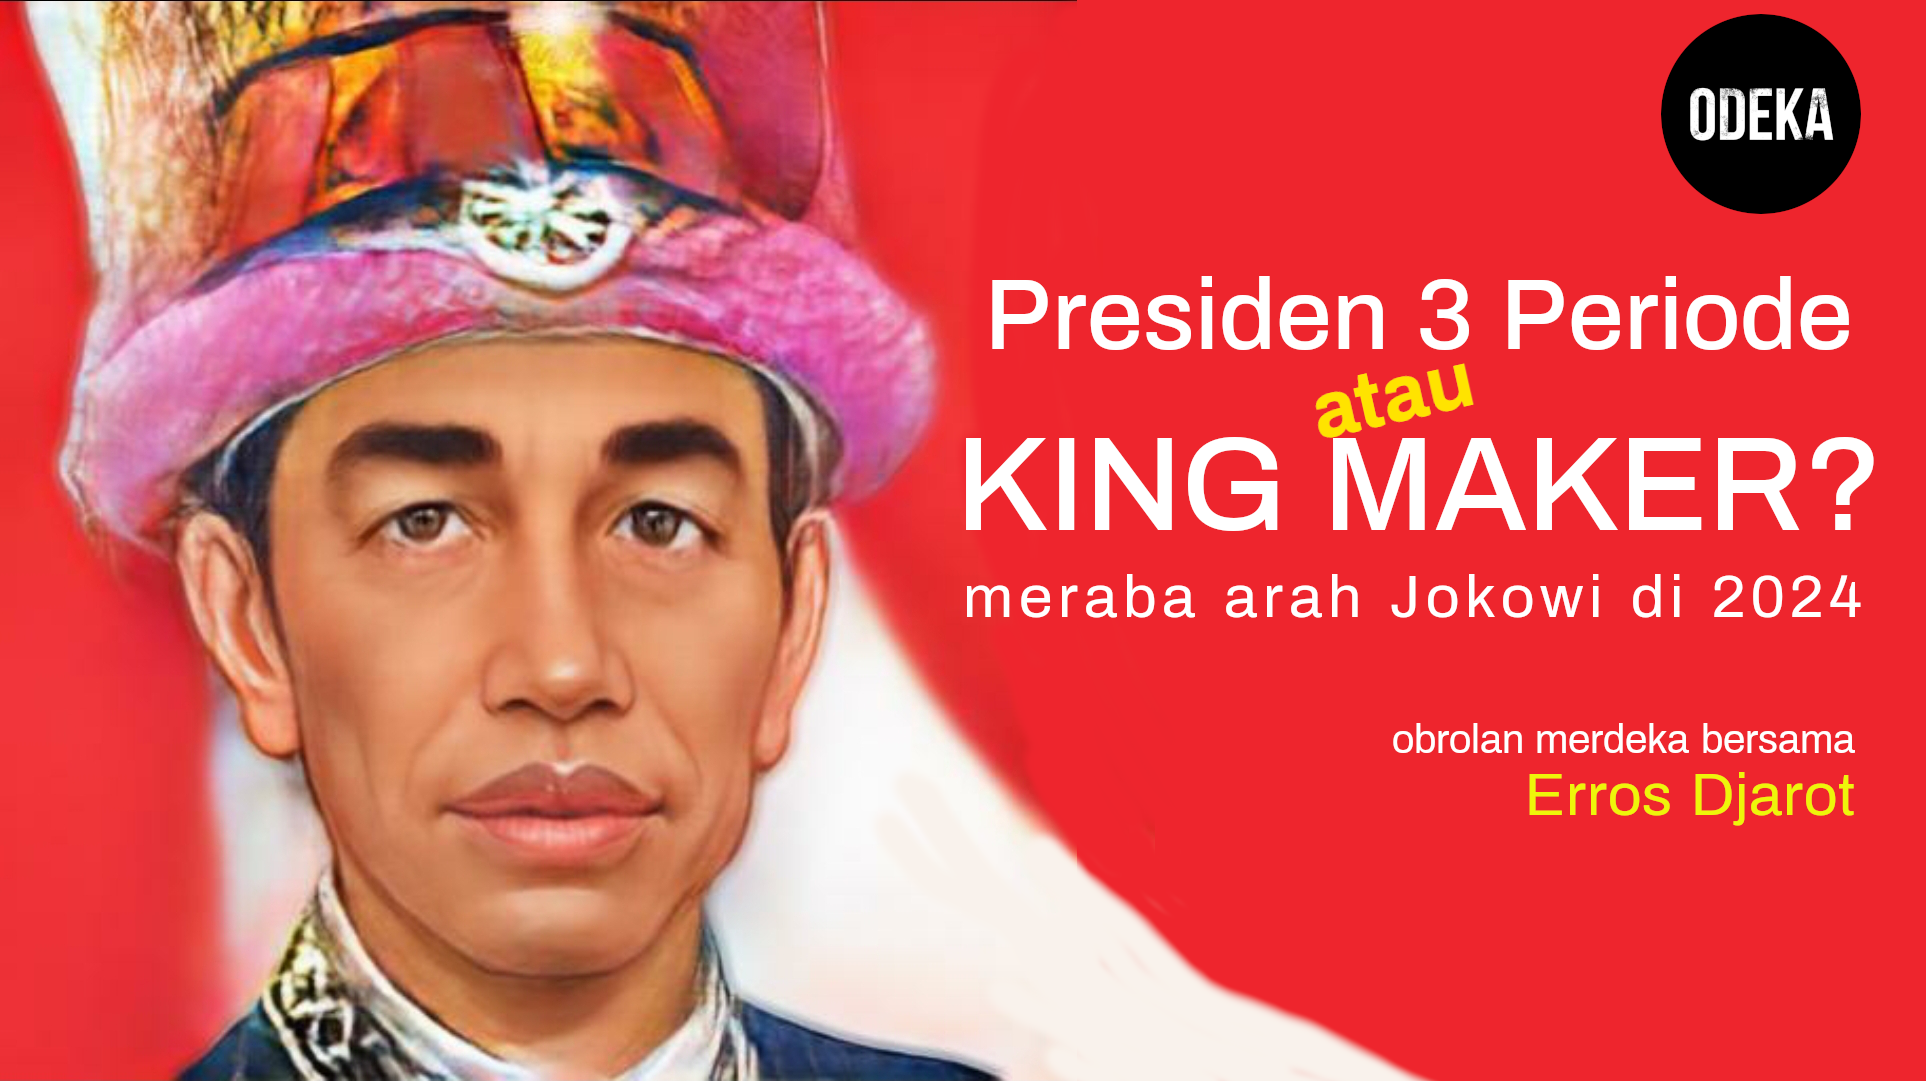 Jokowi 3 periode atau king maker?